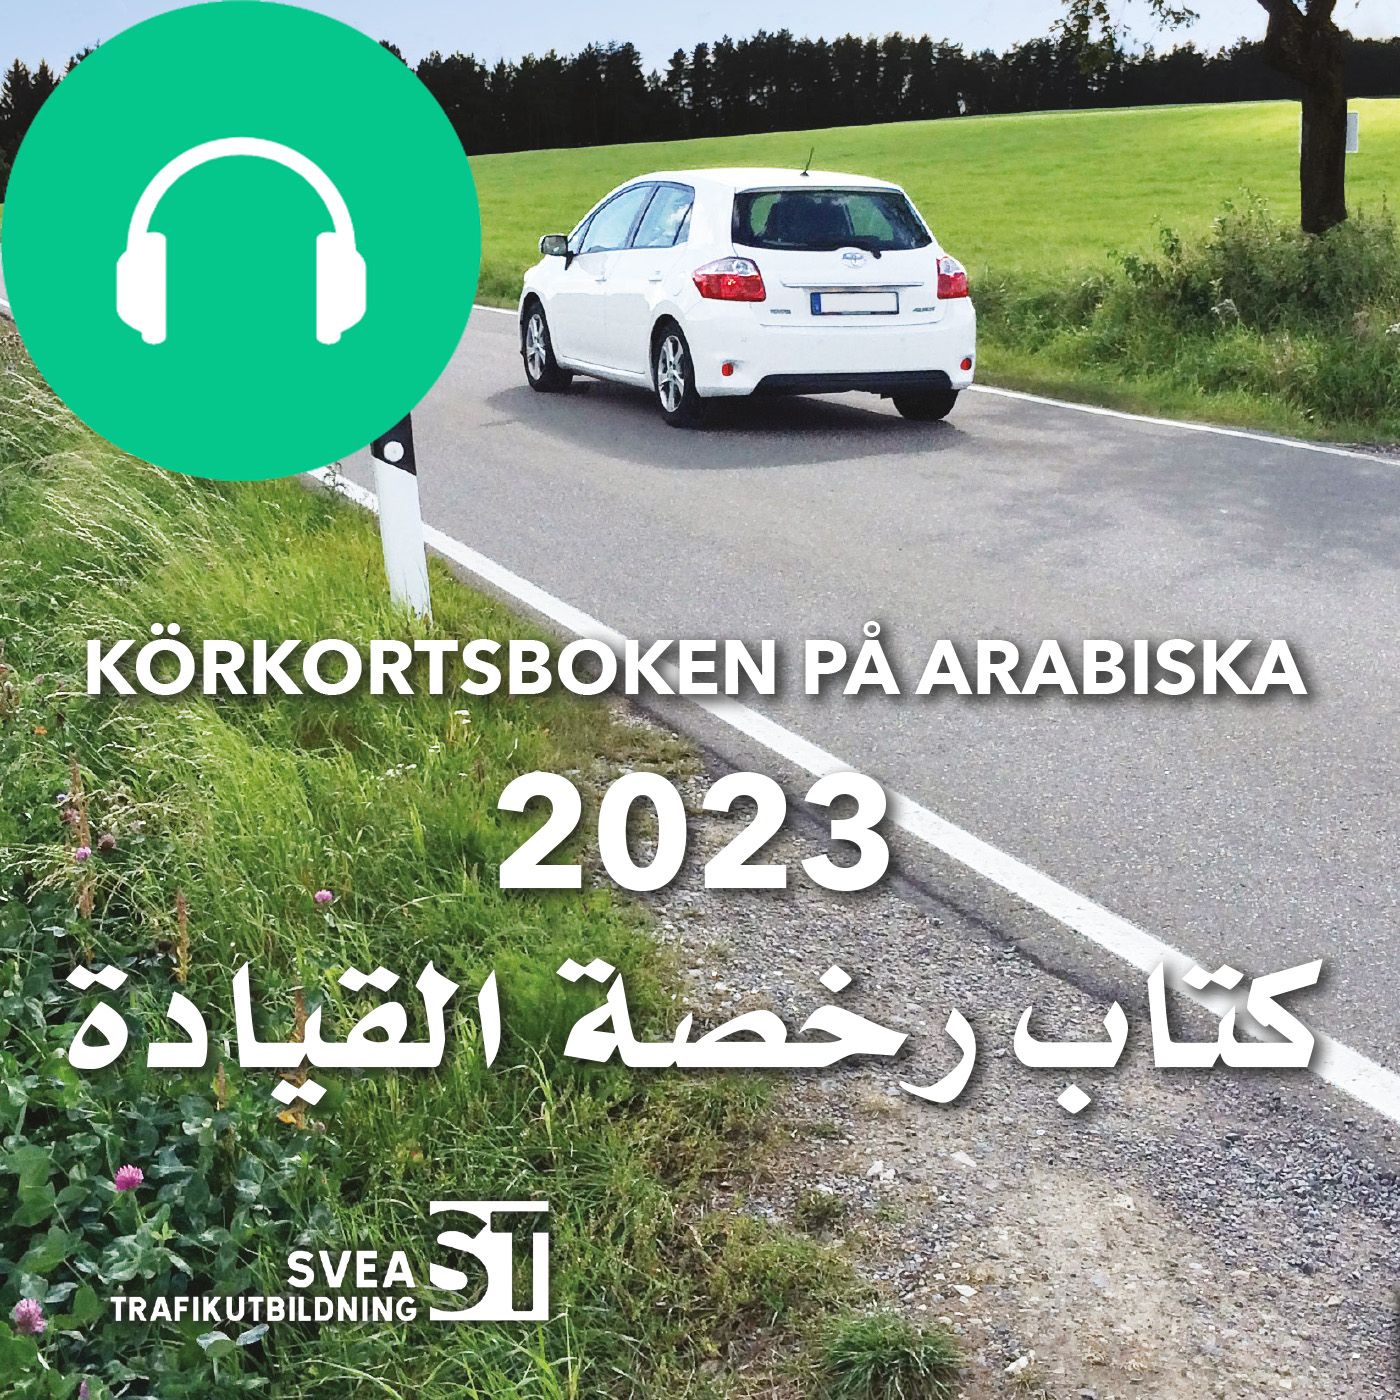 Körkortsboken på Arabiska 2023, ljudbok av Svea Trafikutbildning